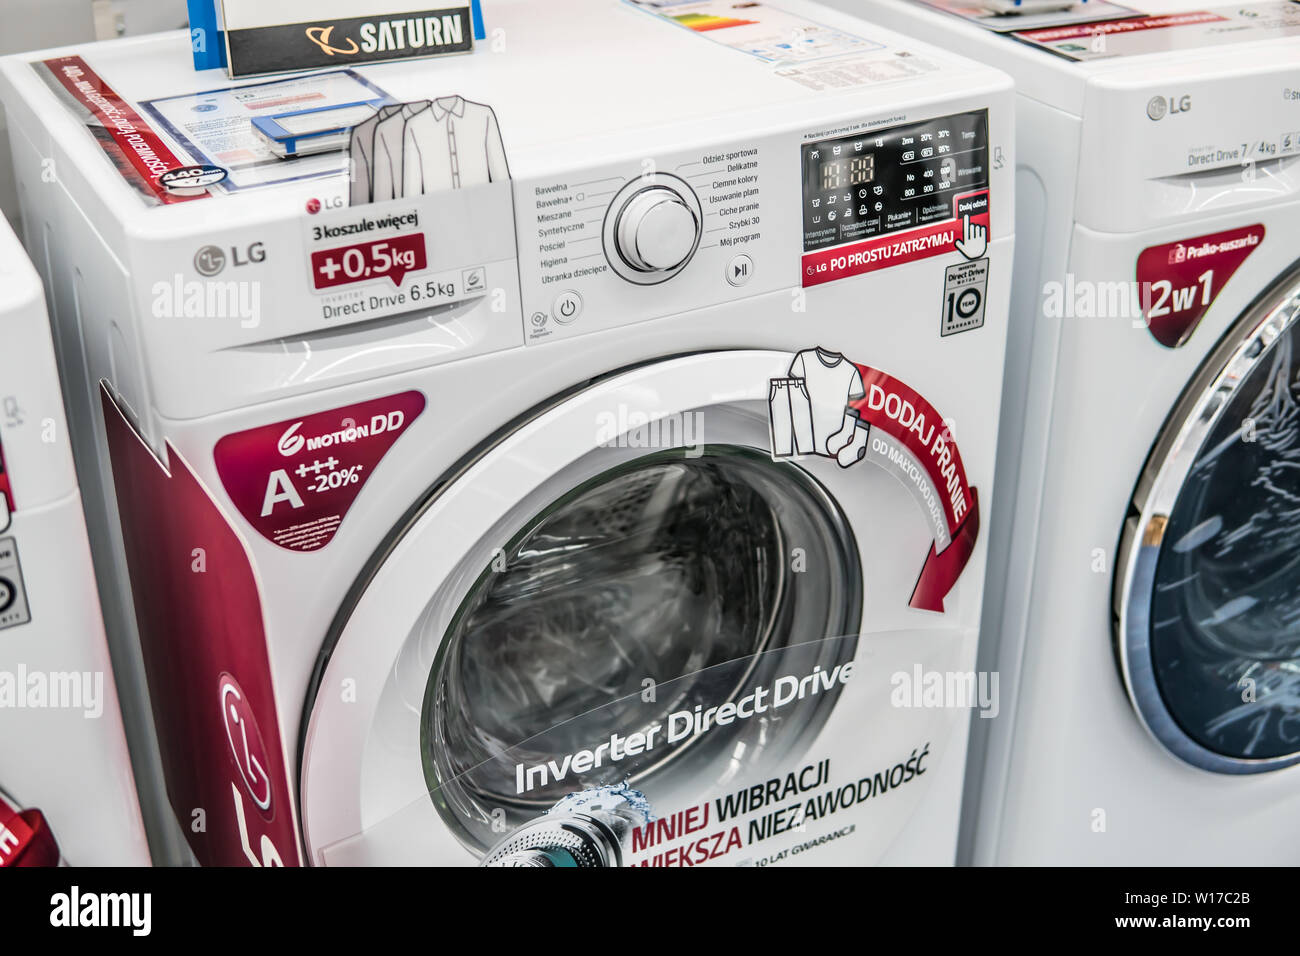 Lodz, Polen, Juli 2018 inside Saturn elektronischen Speicher, freistehende  LG Waschmaschine auf Anzeige zum Verkauf, von LG, Logos, Zeichen, Marke  Stockfotografie - Alamy